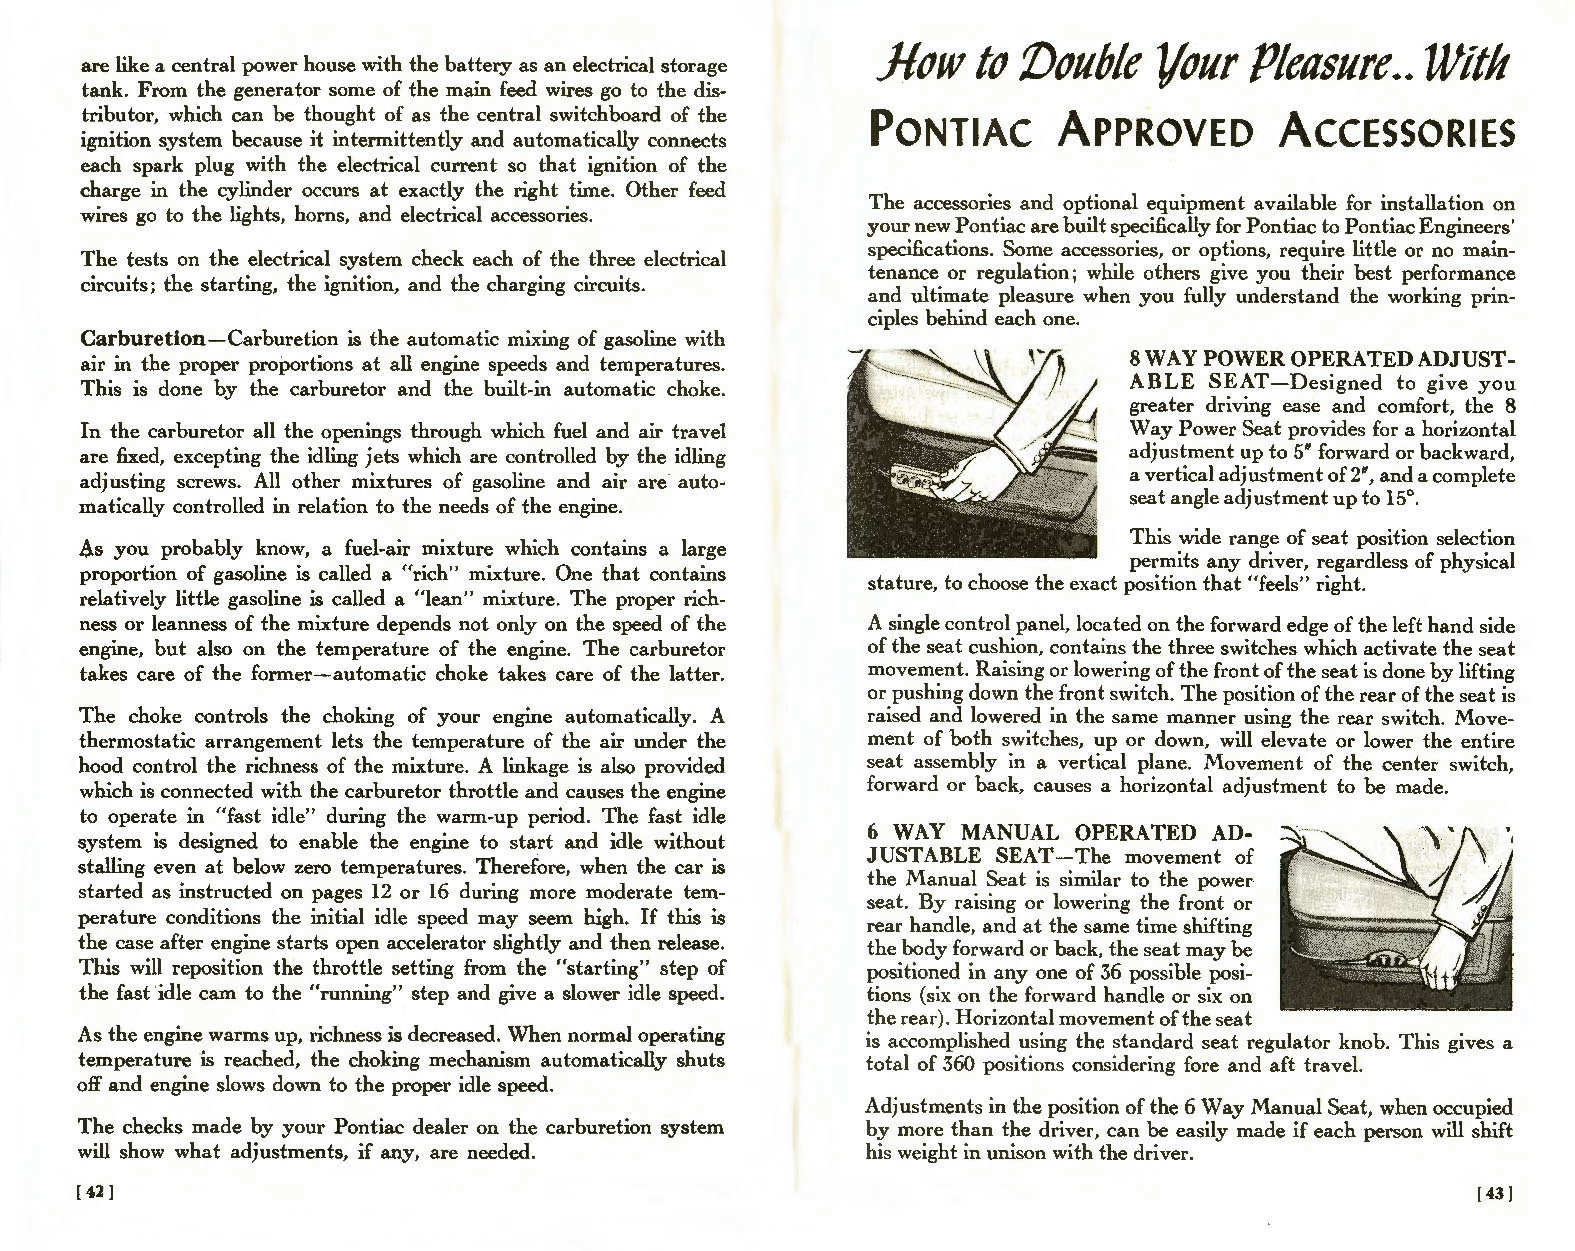 n_1957 Pontiac Owners Guide-42-43.jpg